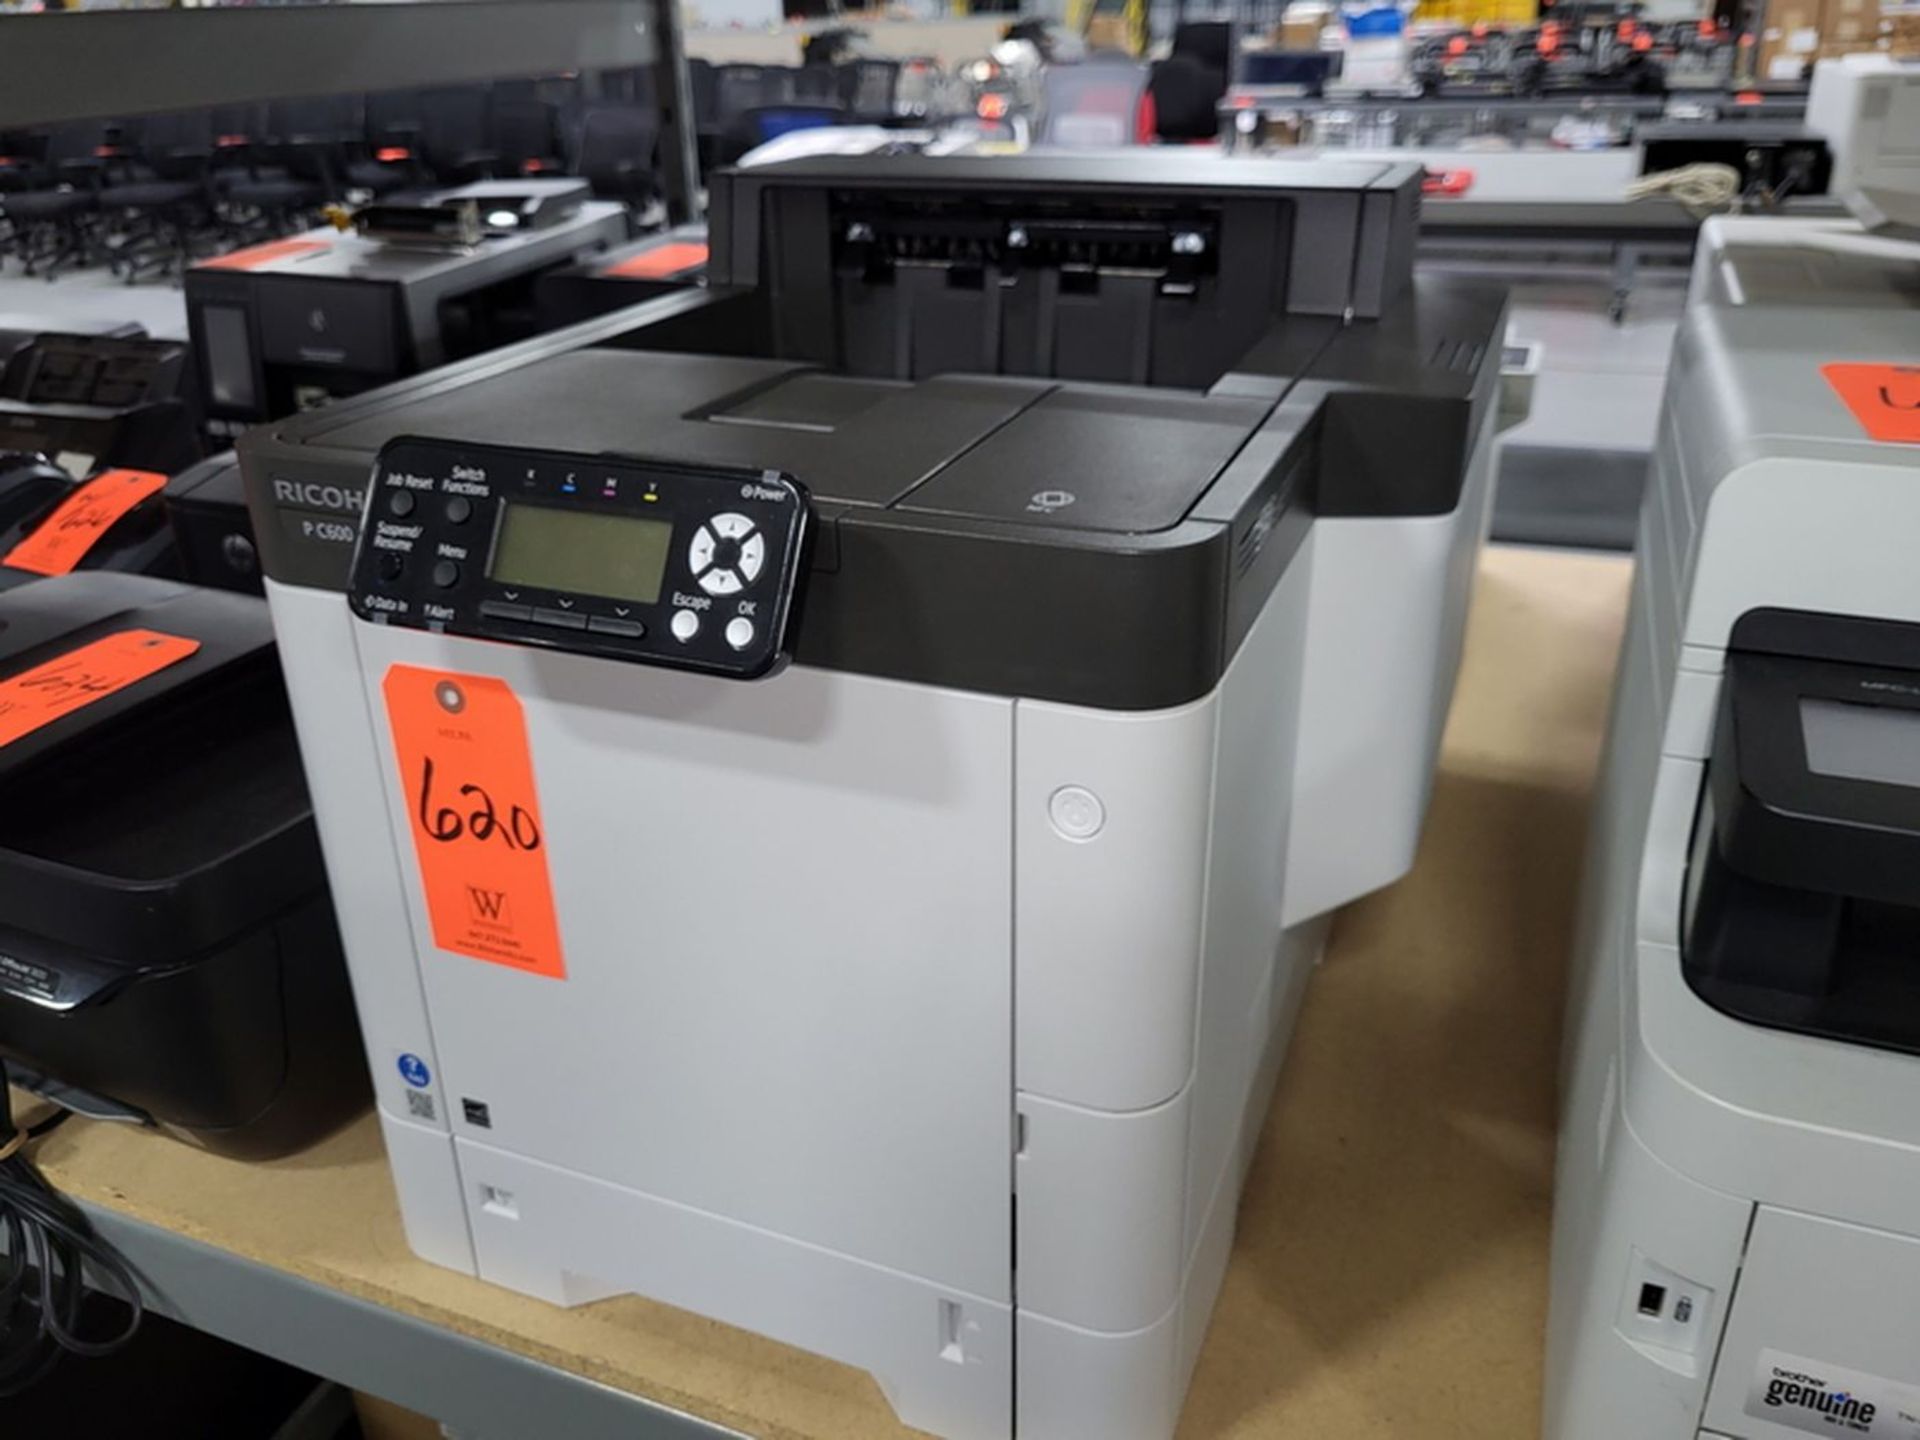 Ricoh P C600 Color Laser Printer;